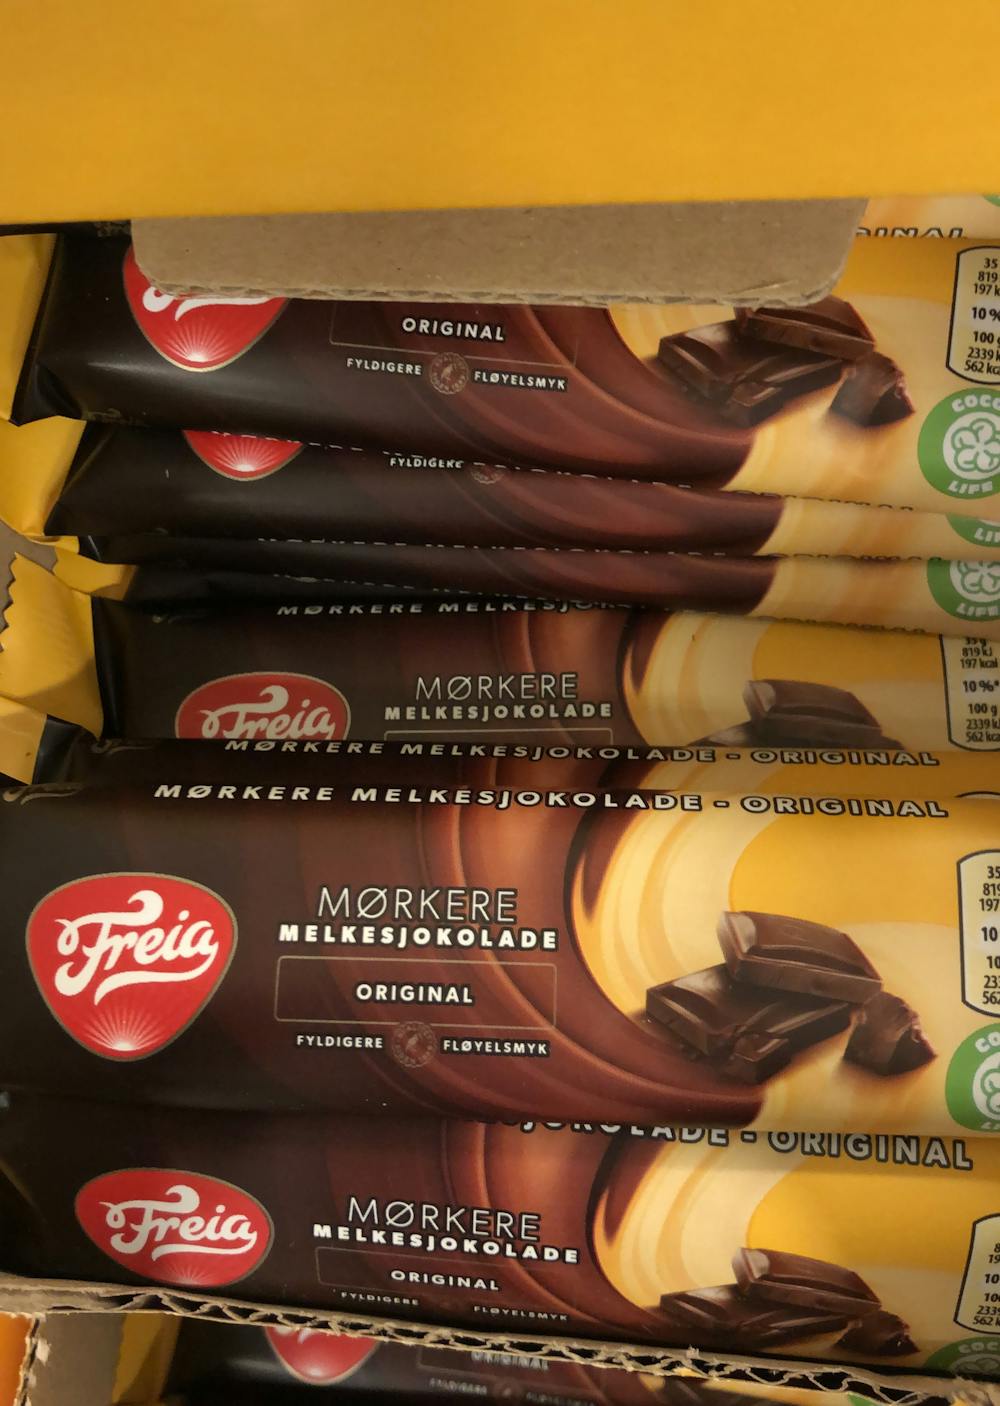 Mørkere melkesjokolade original 35g, Freia